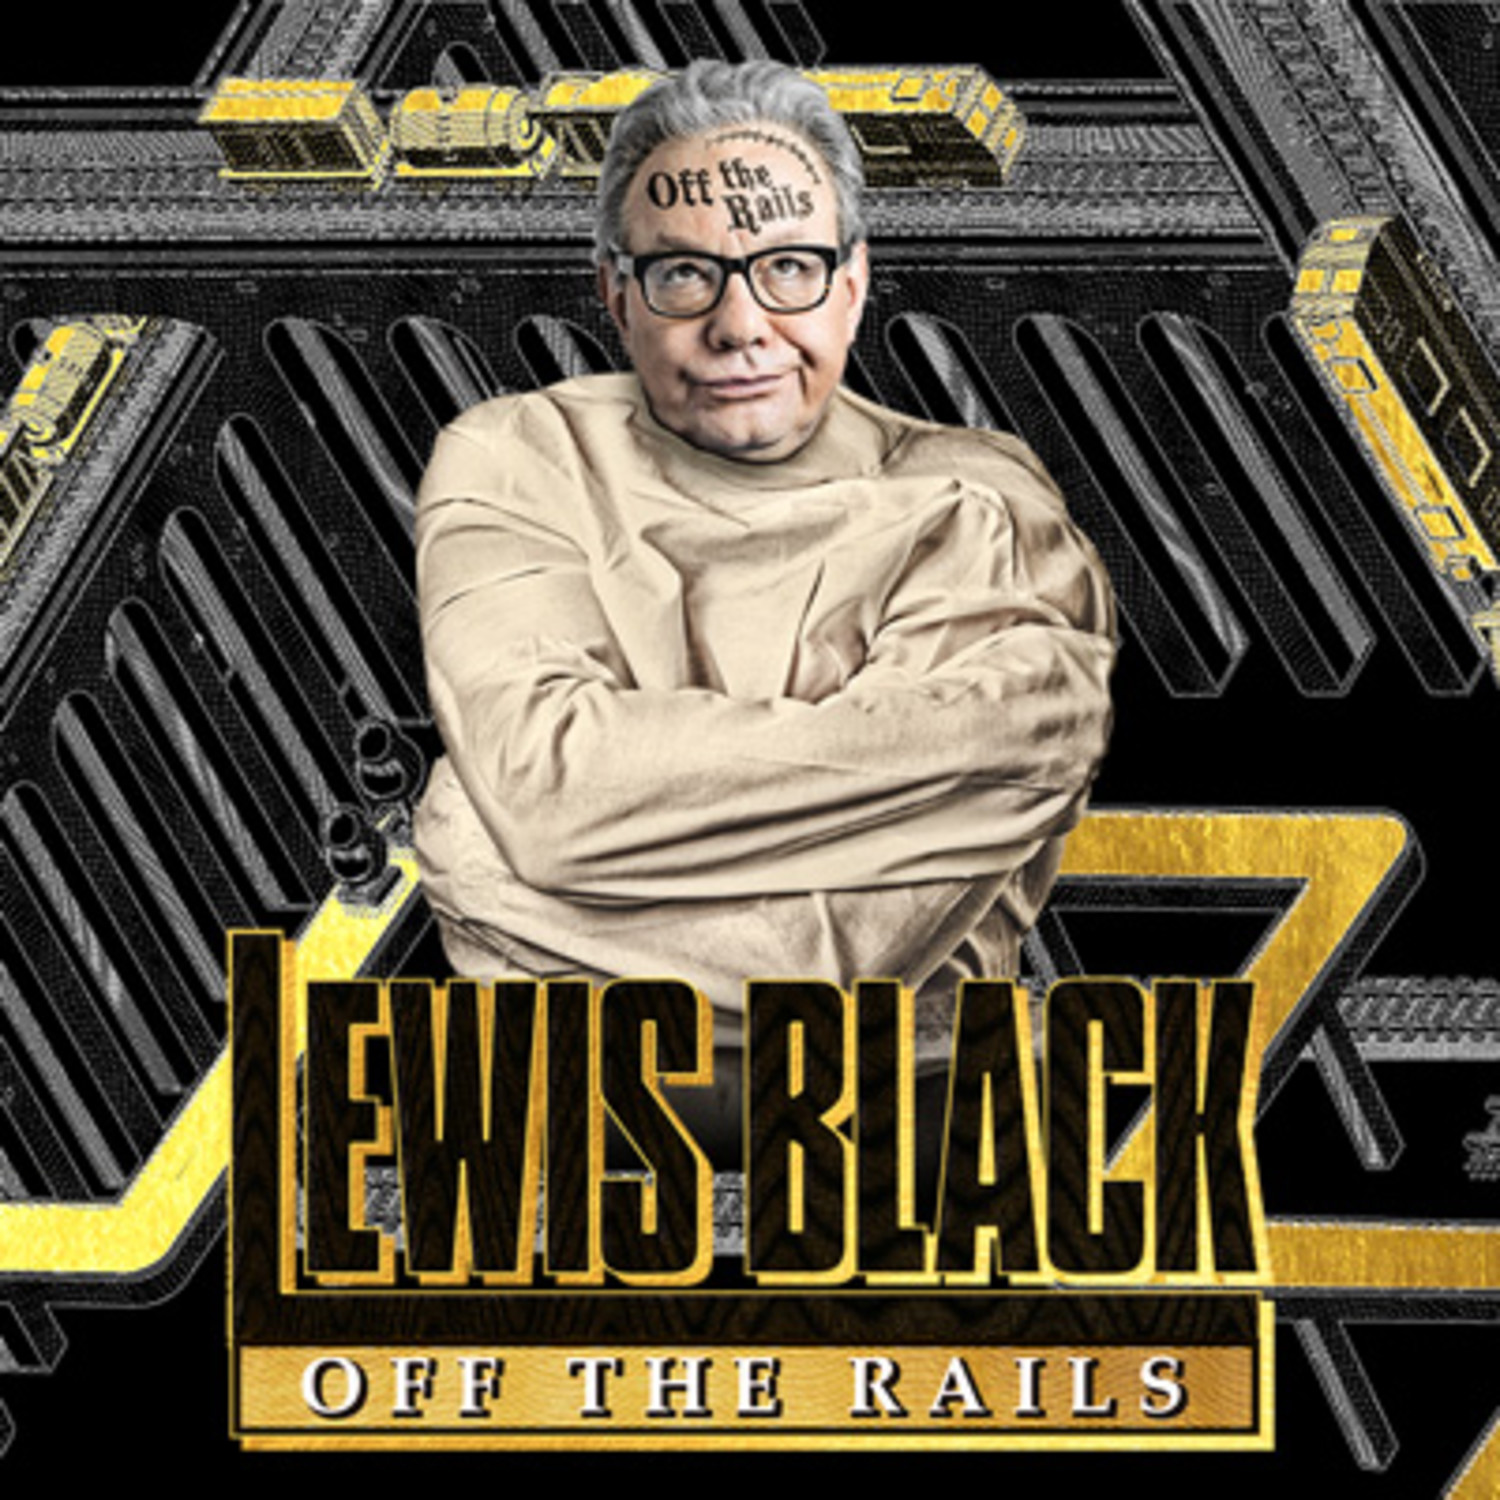 lewis black off the rails tour review